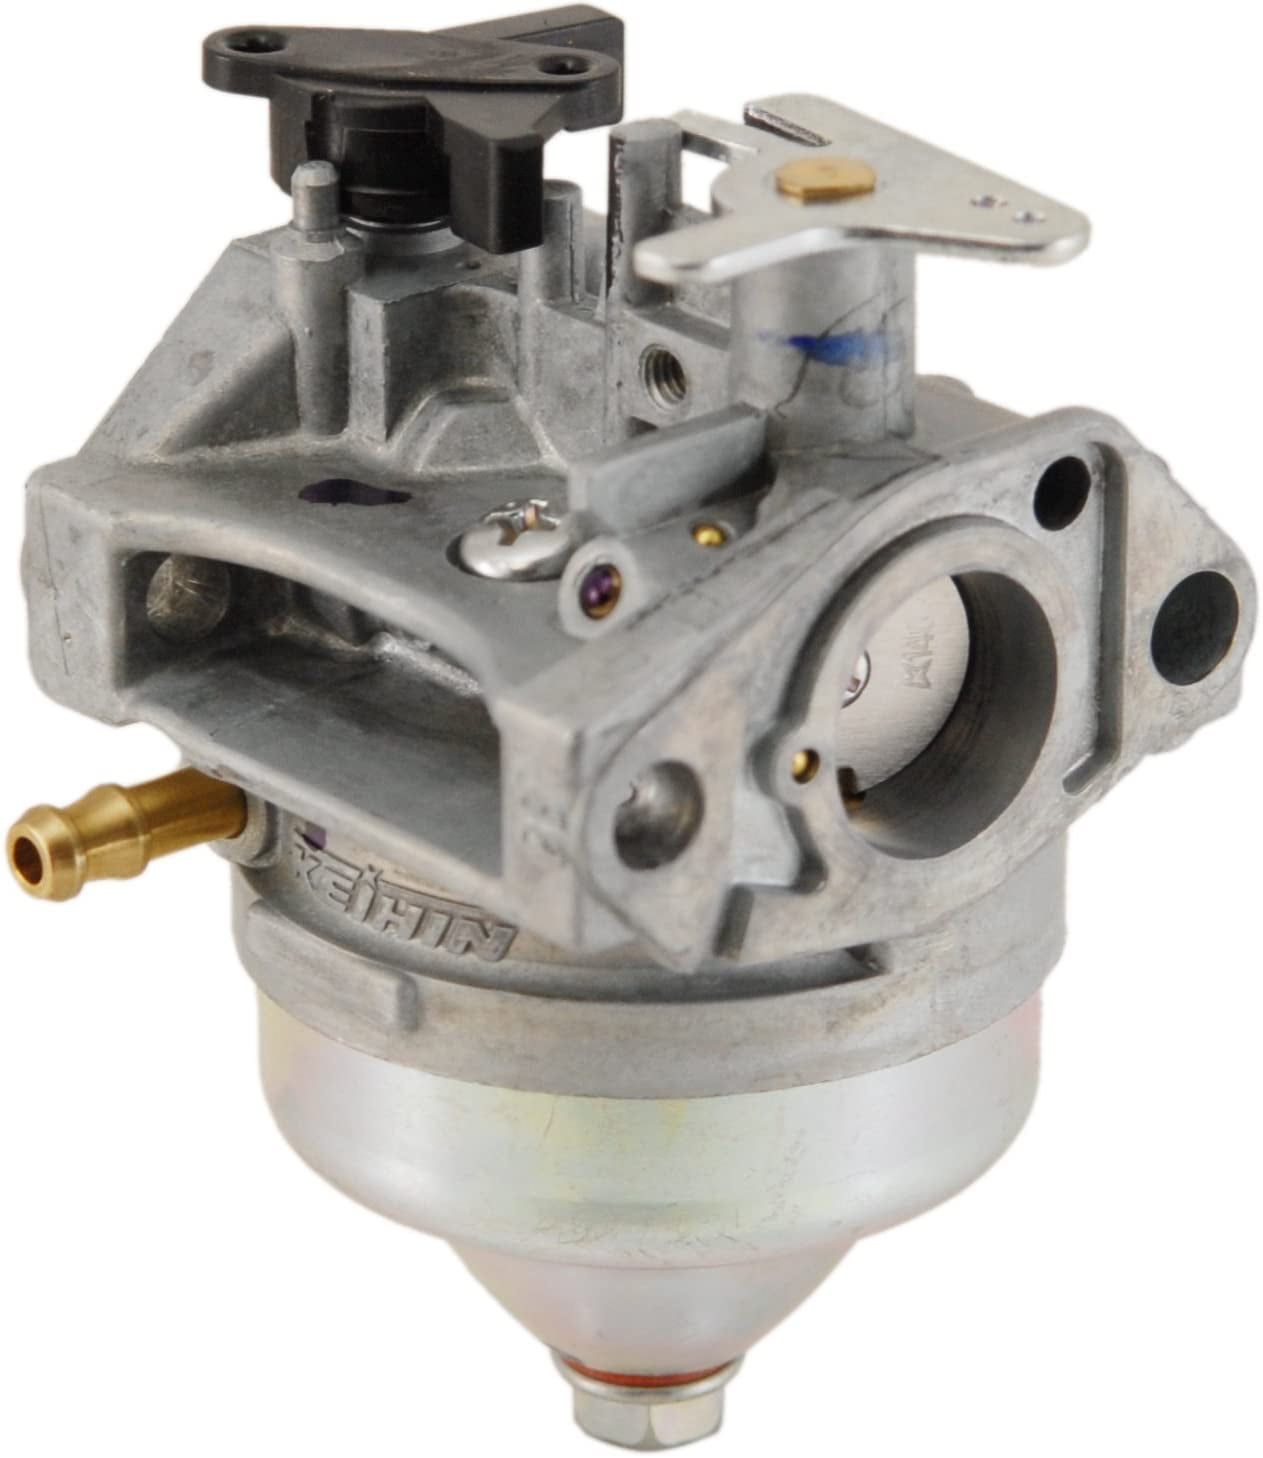 Replacement carburetor for Honda part 16100-Z0Y-853 16100-Z0Y-851 